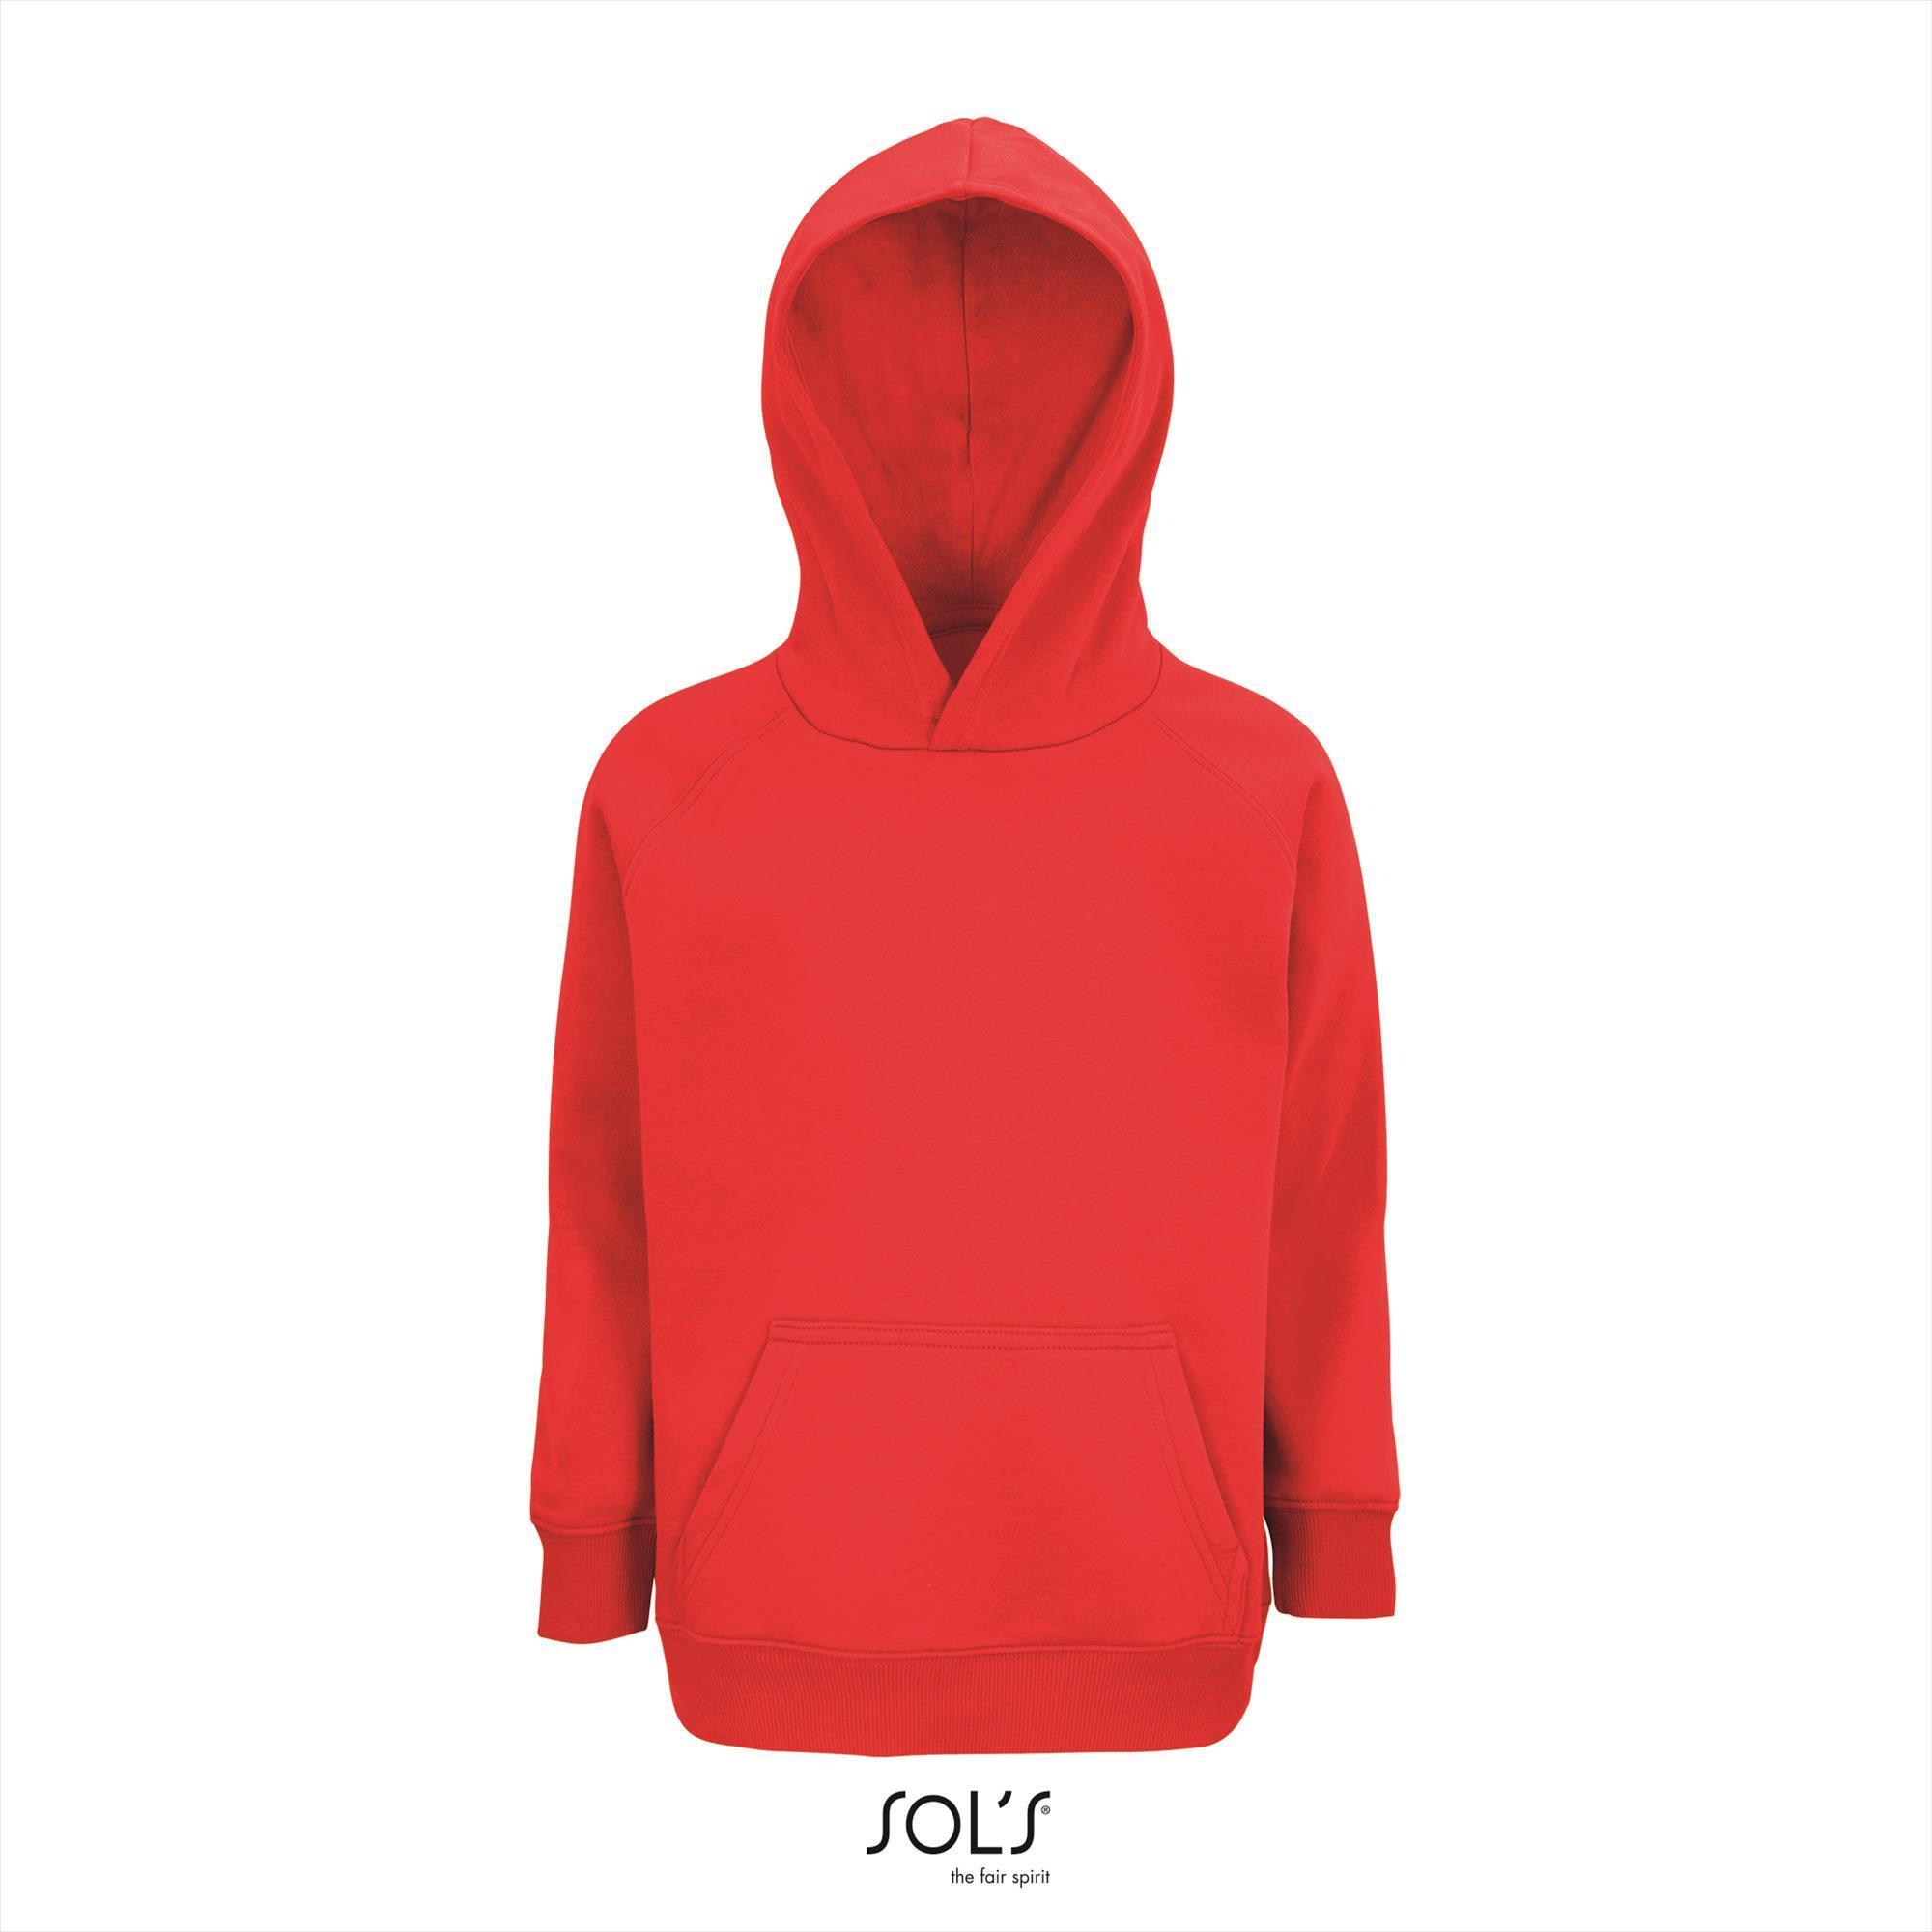 Kinder hoodie rood personaliseren bedrukken sweatshirt